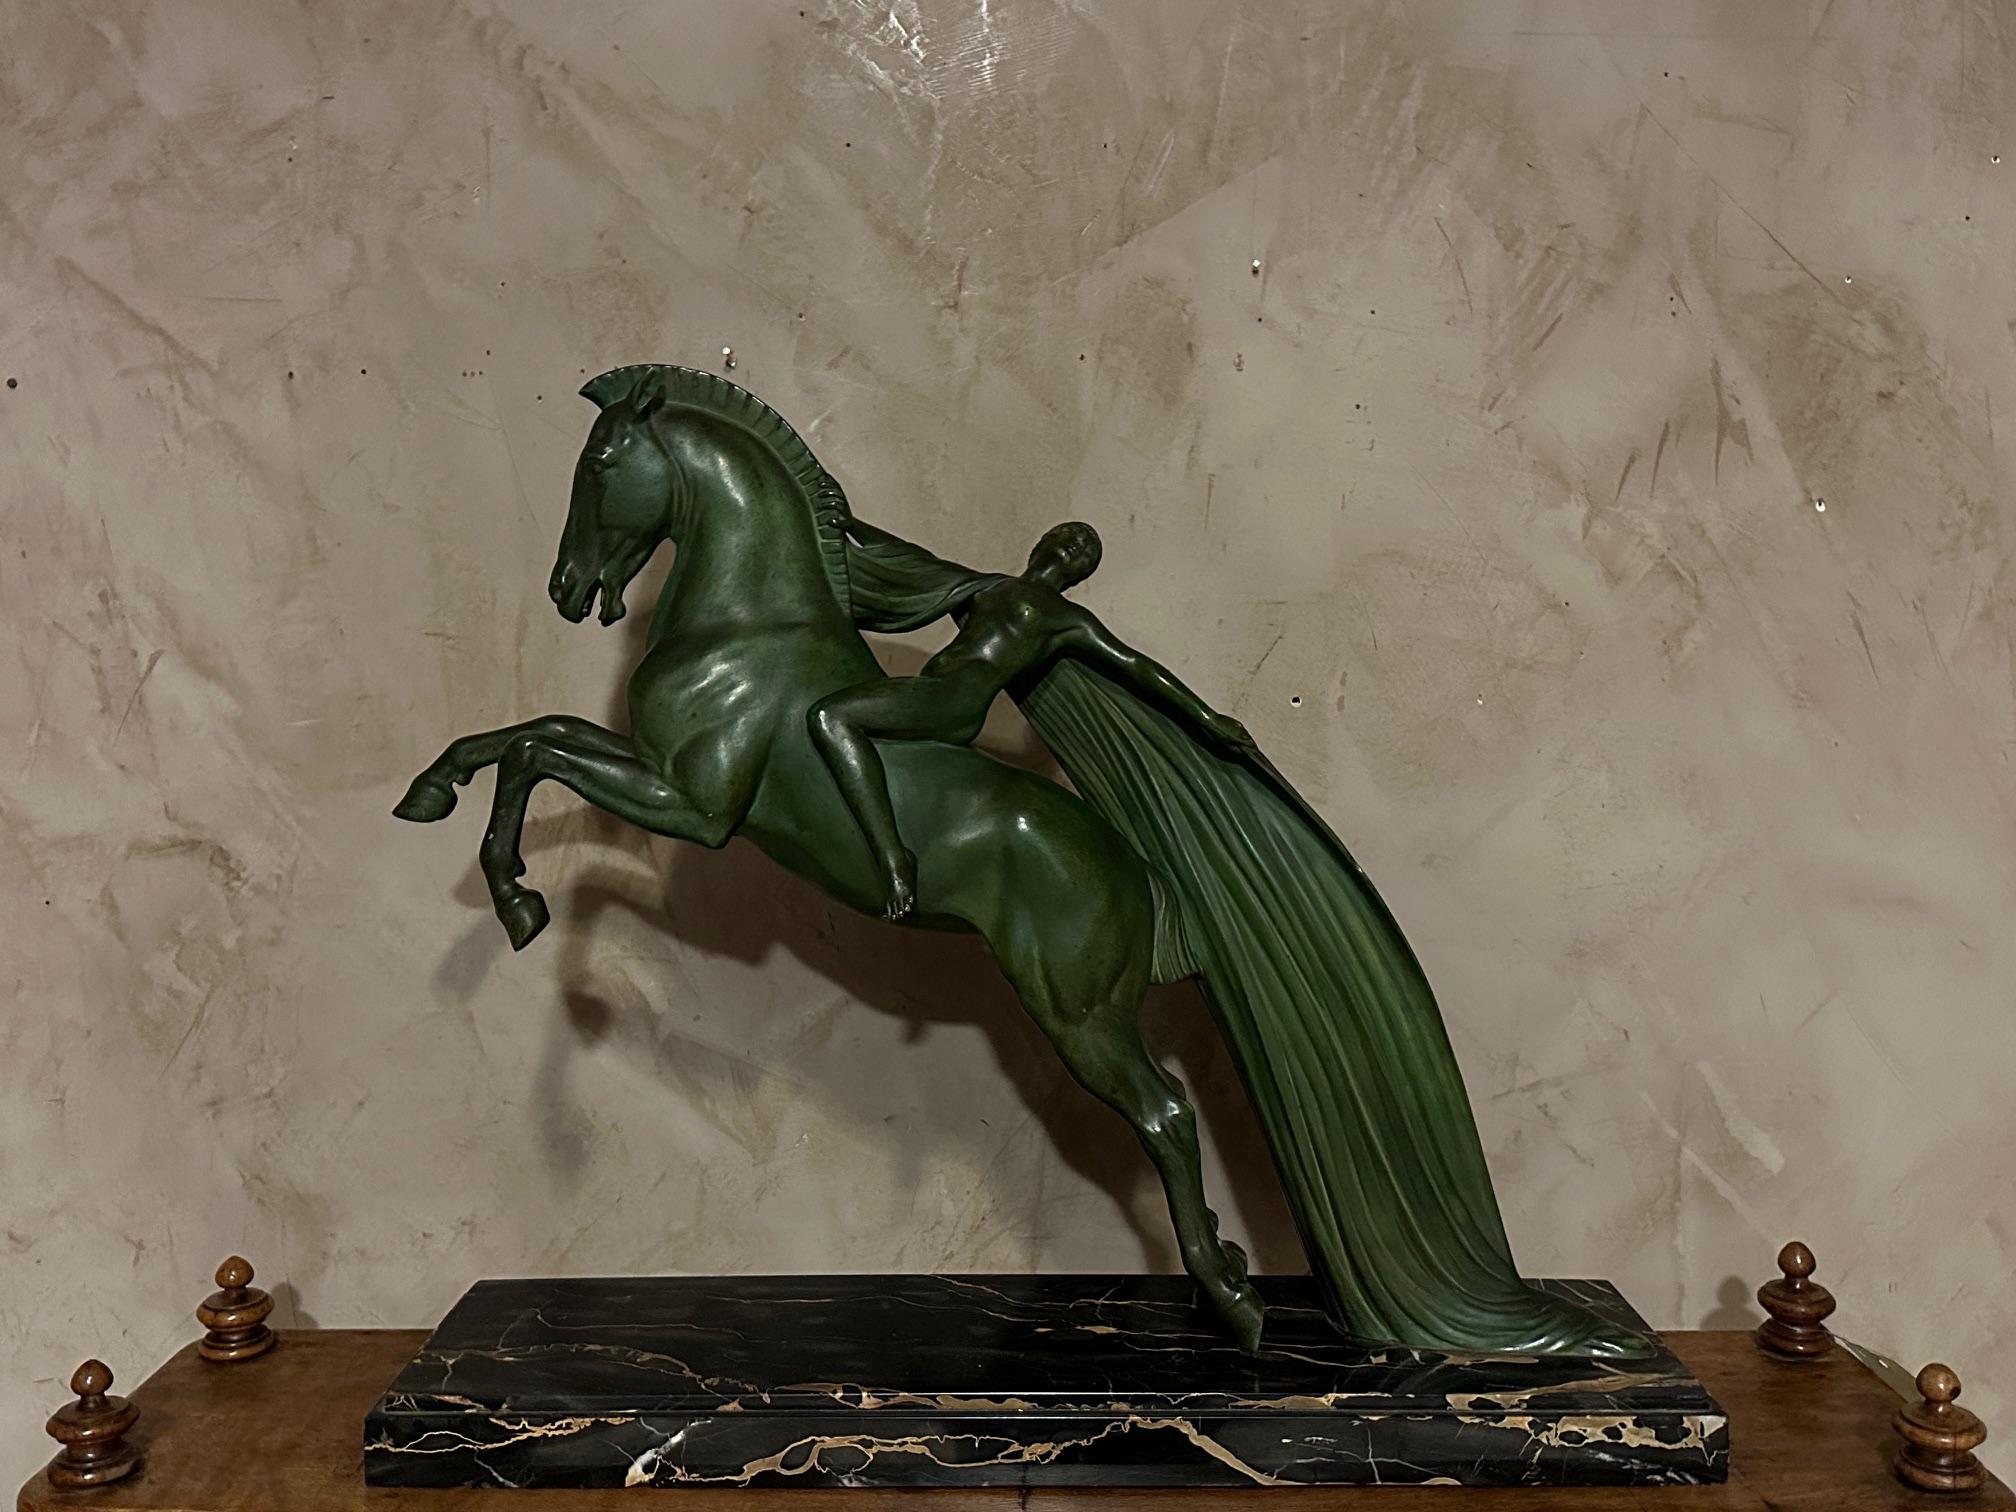 Prächtige Metallskulptur aus der Zeit des Art déco, die eine Frau auf einem Pferd darstellt. Signiert vom Künstler C.Charles auf dem Sockel. 
Schöne grüne Patina.
Dieses Stück wurde in der Werkstatt von Max Le Verrier hergestellt.
Diese fließende